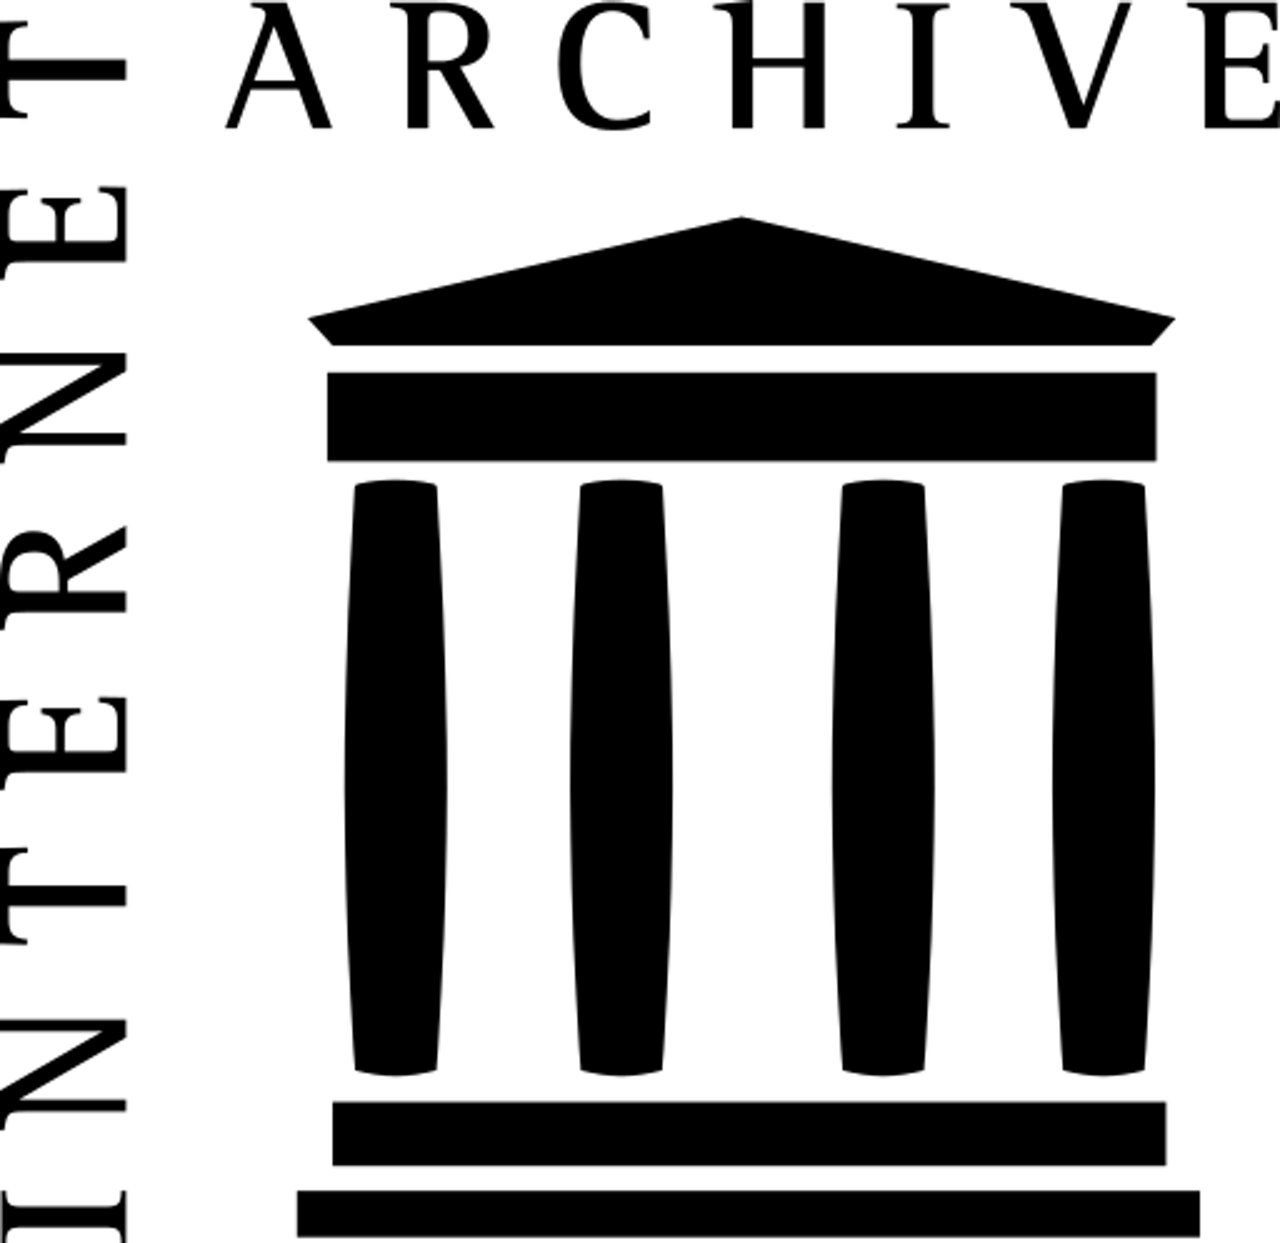 Het zwart-witte logo van het internet archief.